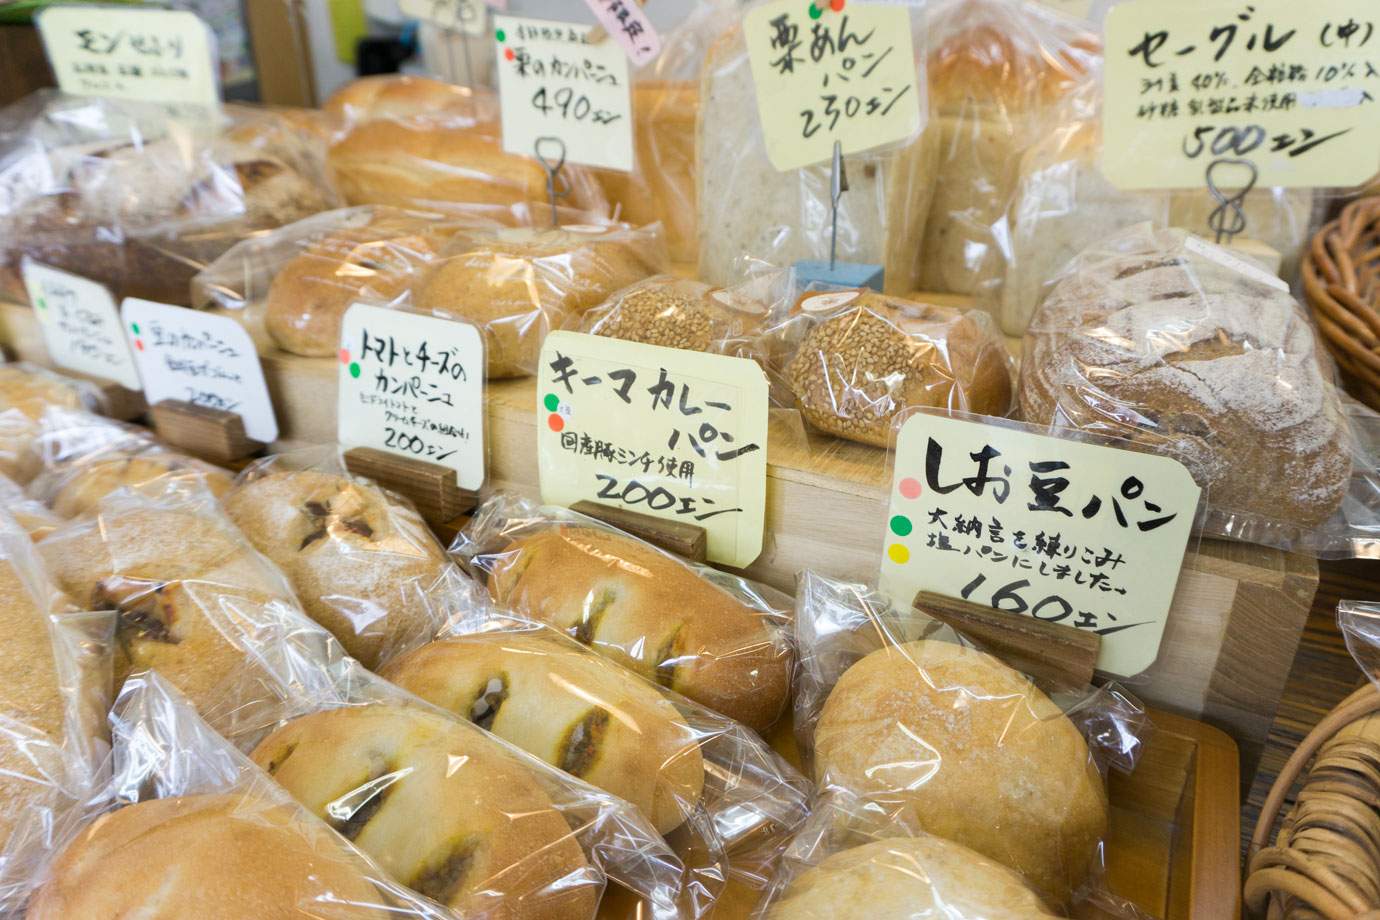 しお豆パン160円、キーマカレーパン200円